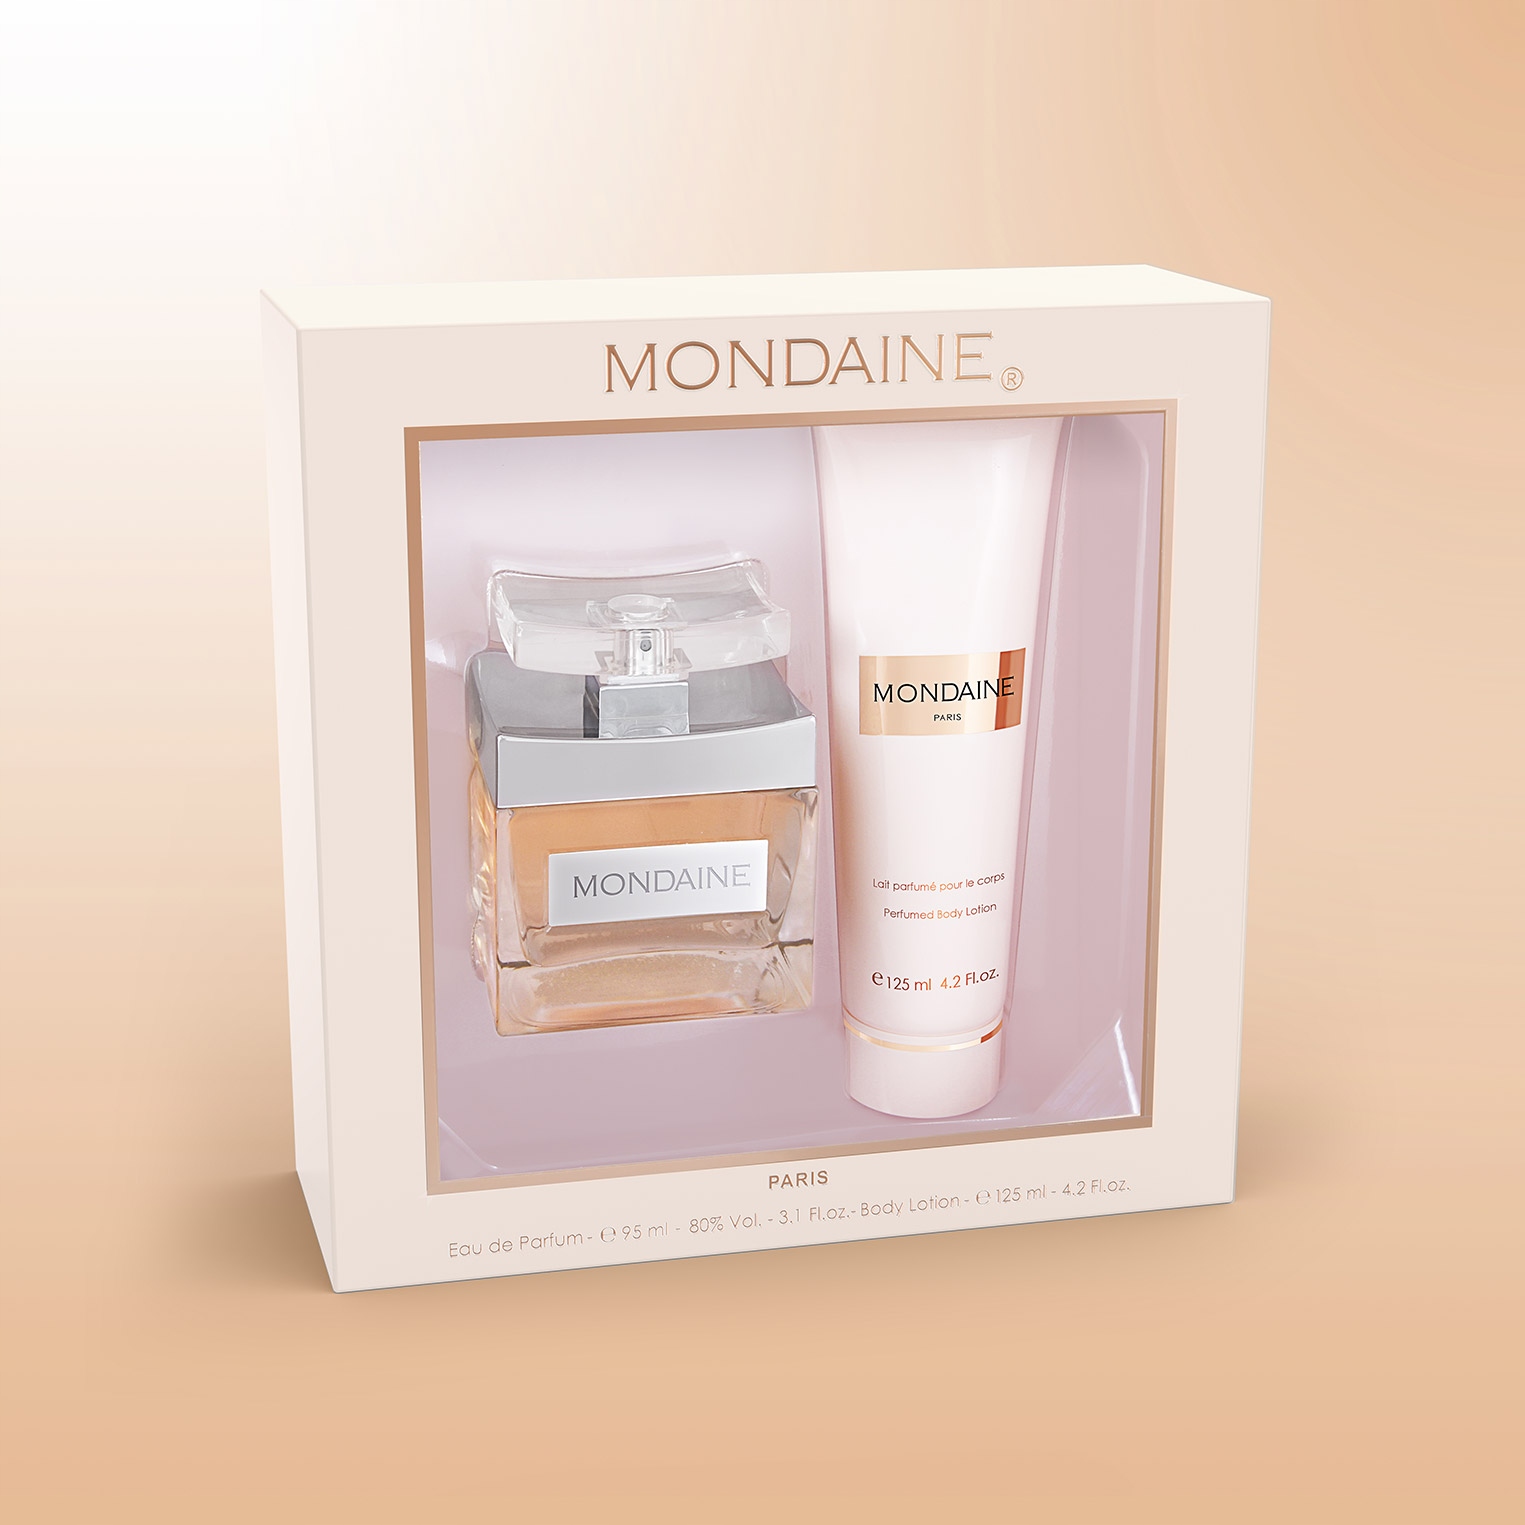 Mondaine by Paris Bleu 3.1 oz Eau de Parfum Spray for Women